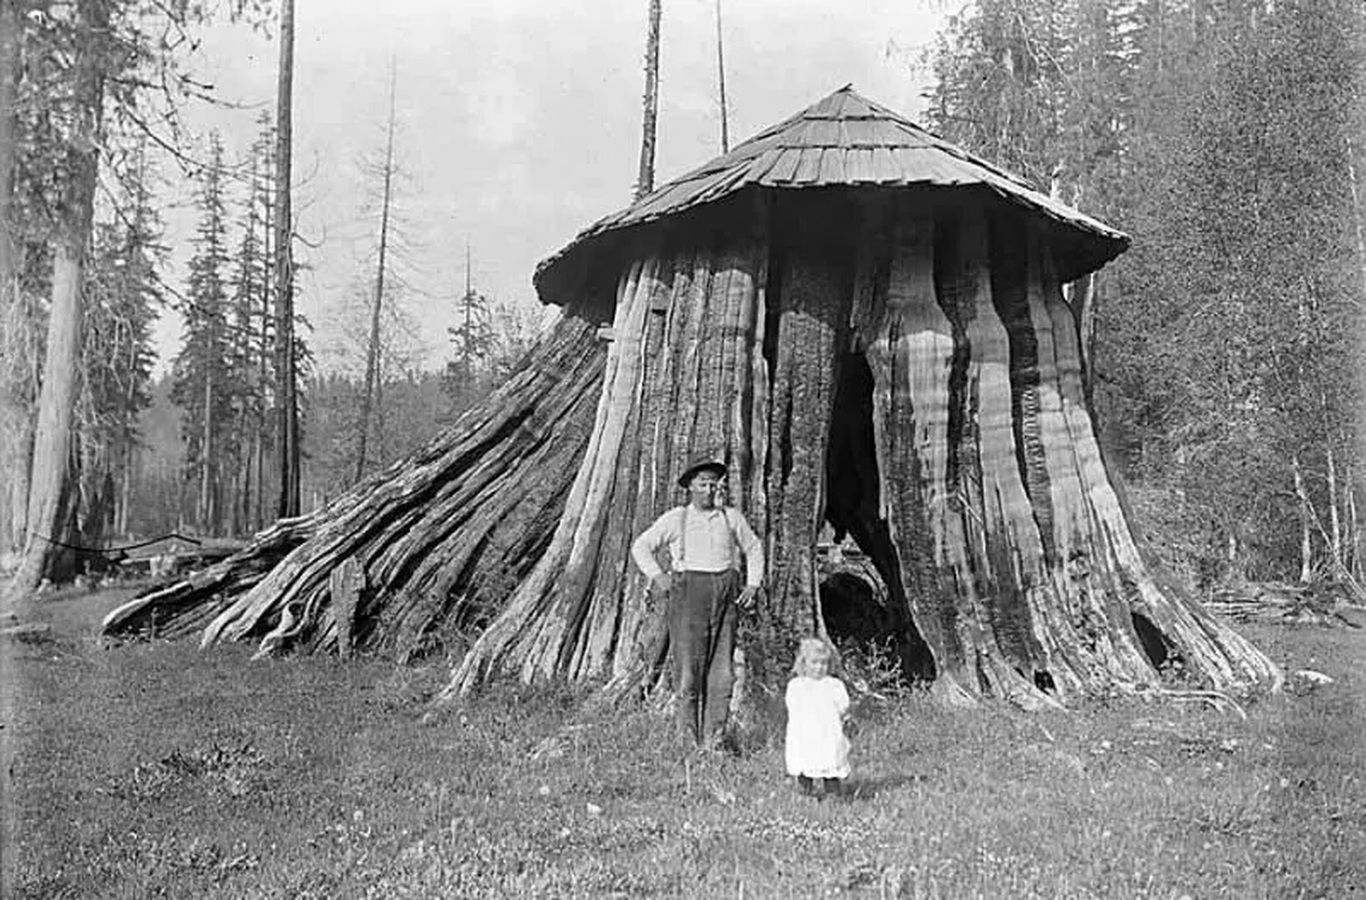 زندگی در کُندۀ درخت در اوایل قرن بیستم! (تصاویر)